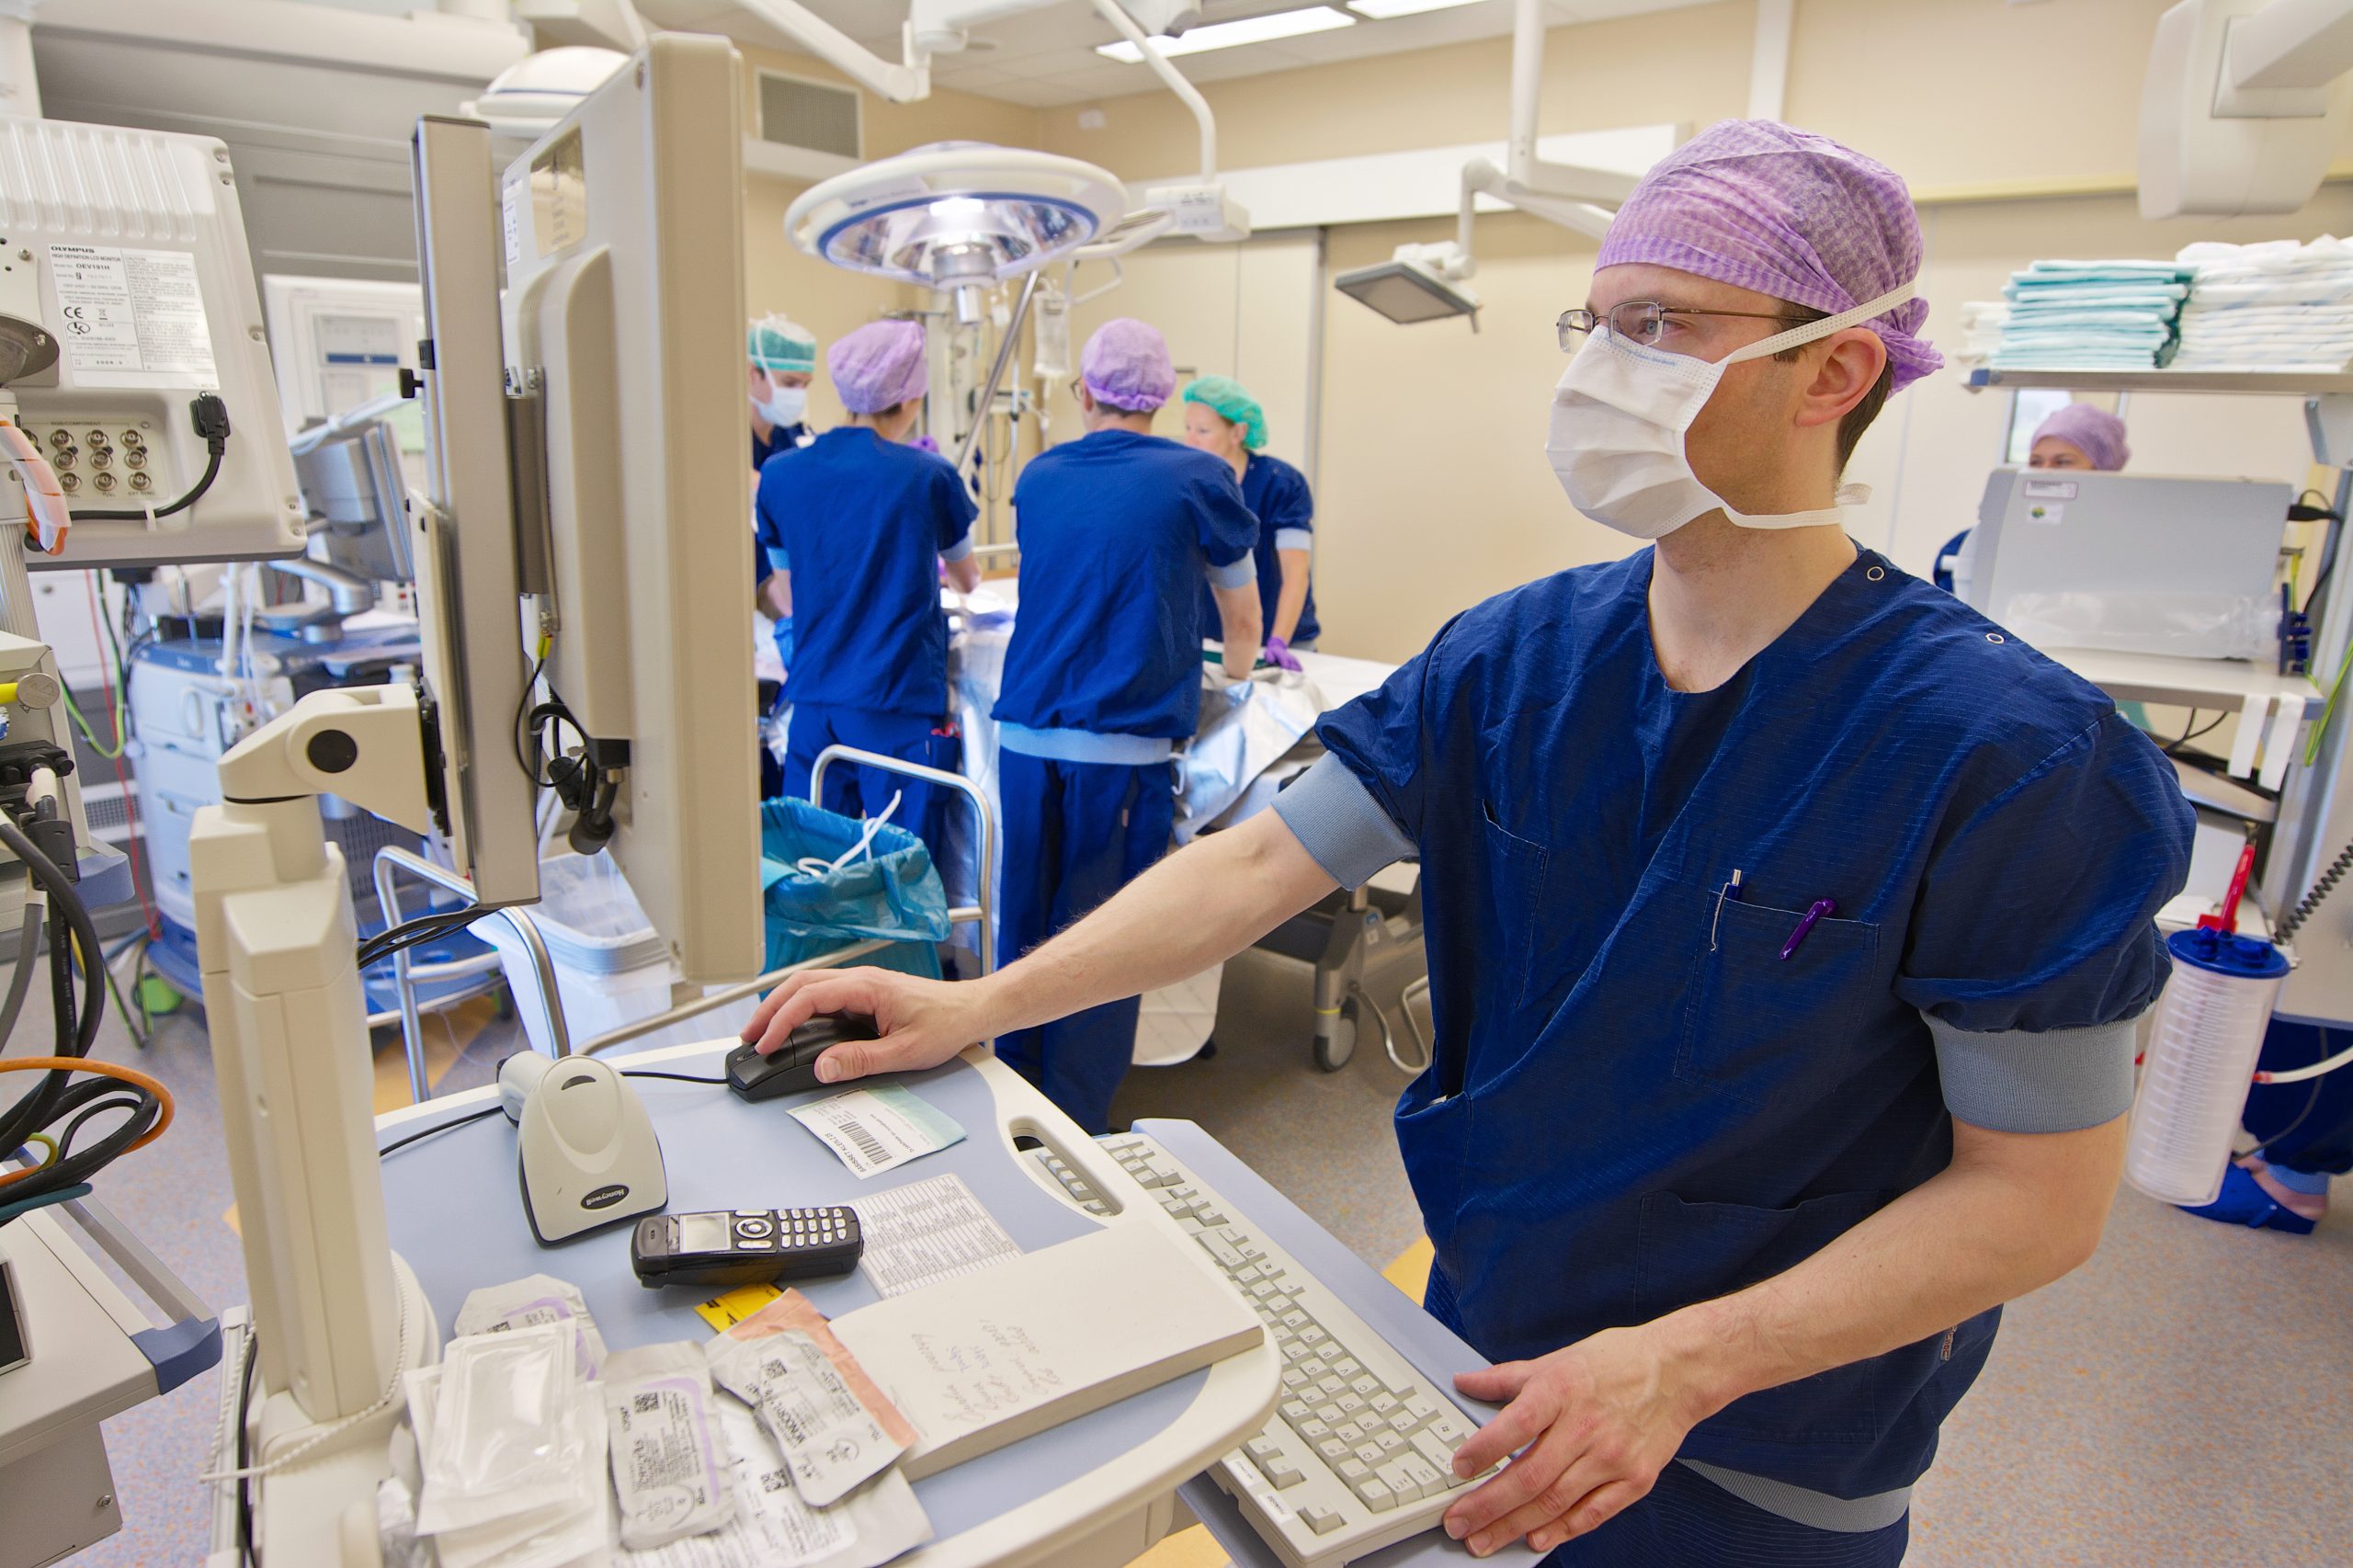 Leidinggevenden ziekenhuis Rijnstate benutten pauze om te verbeteren